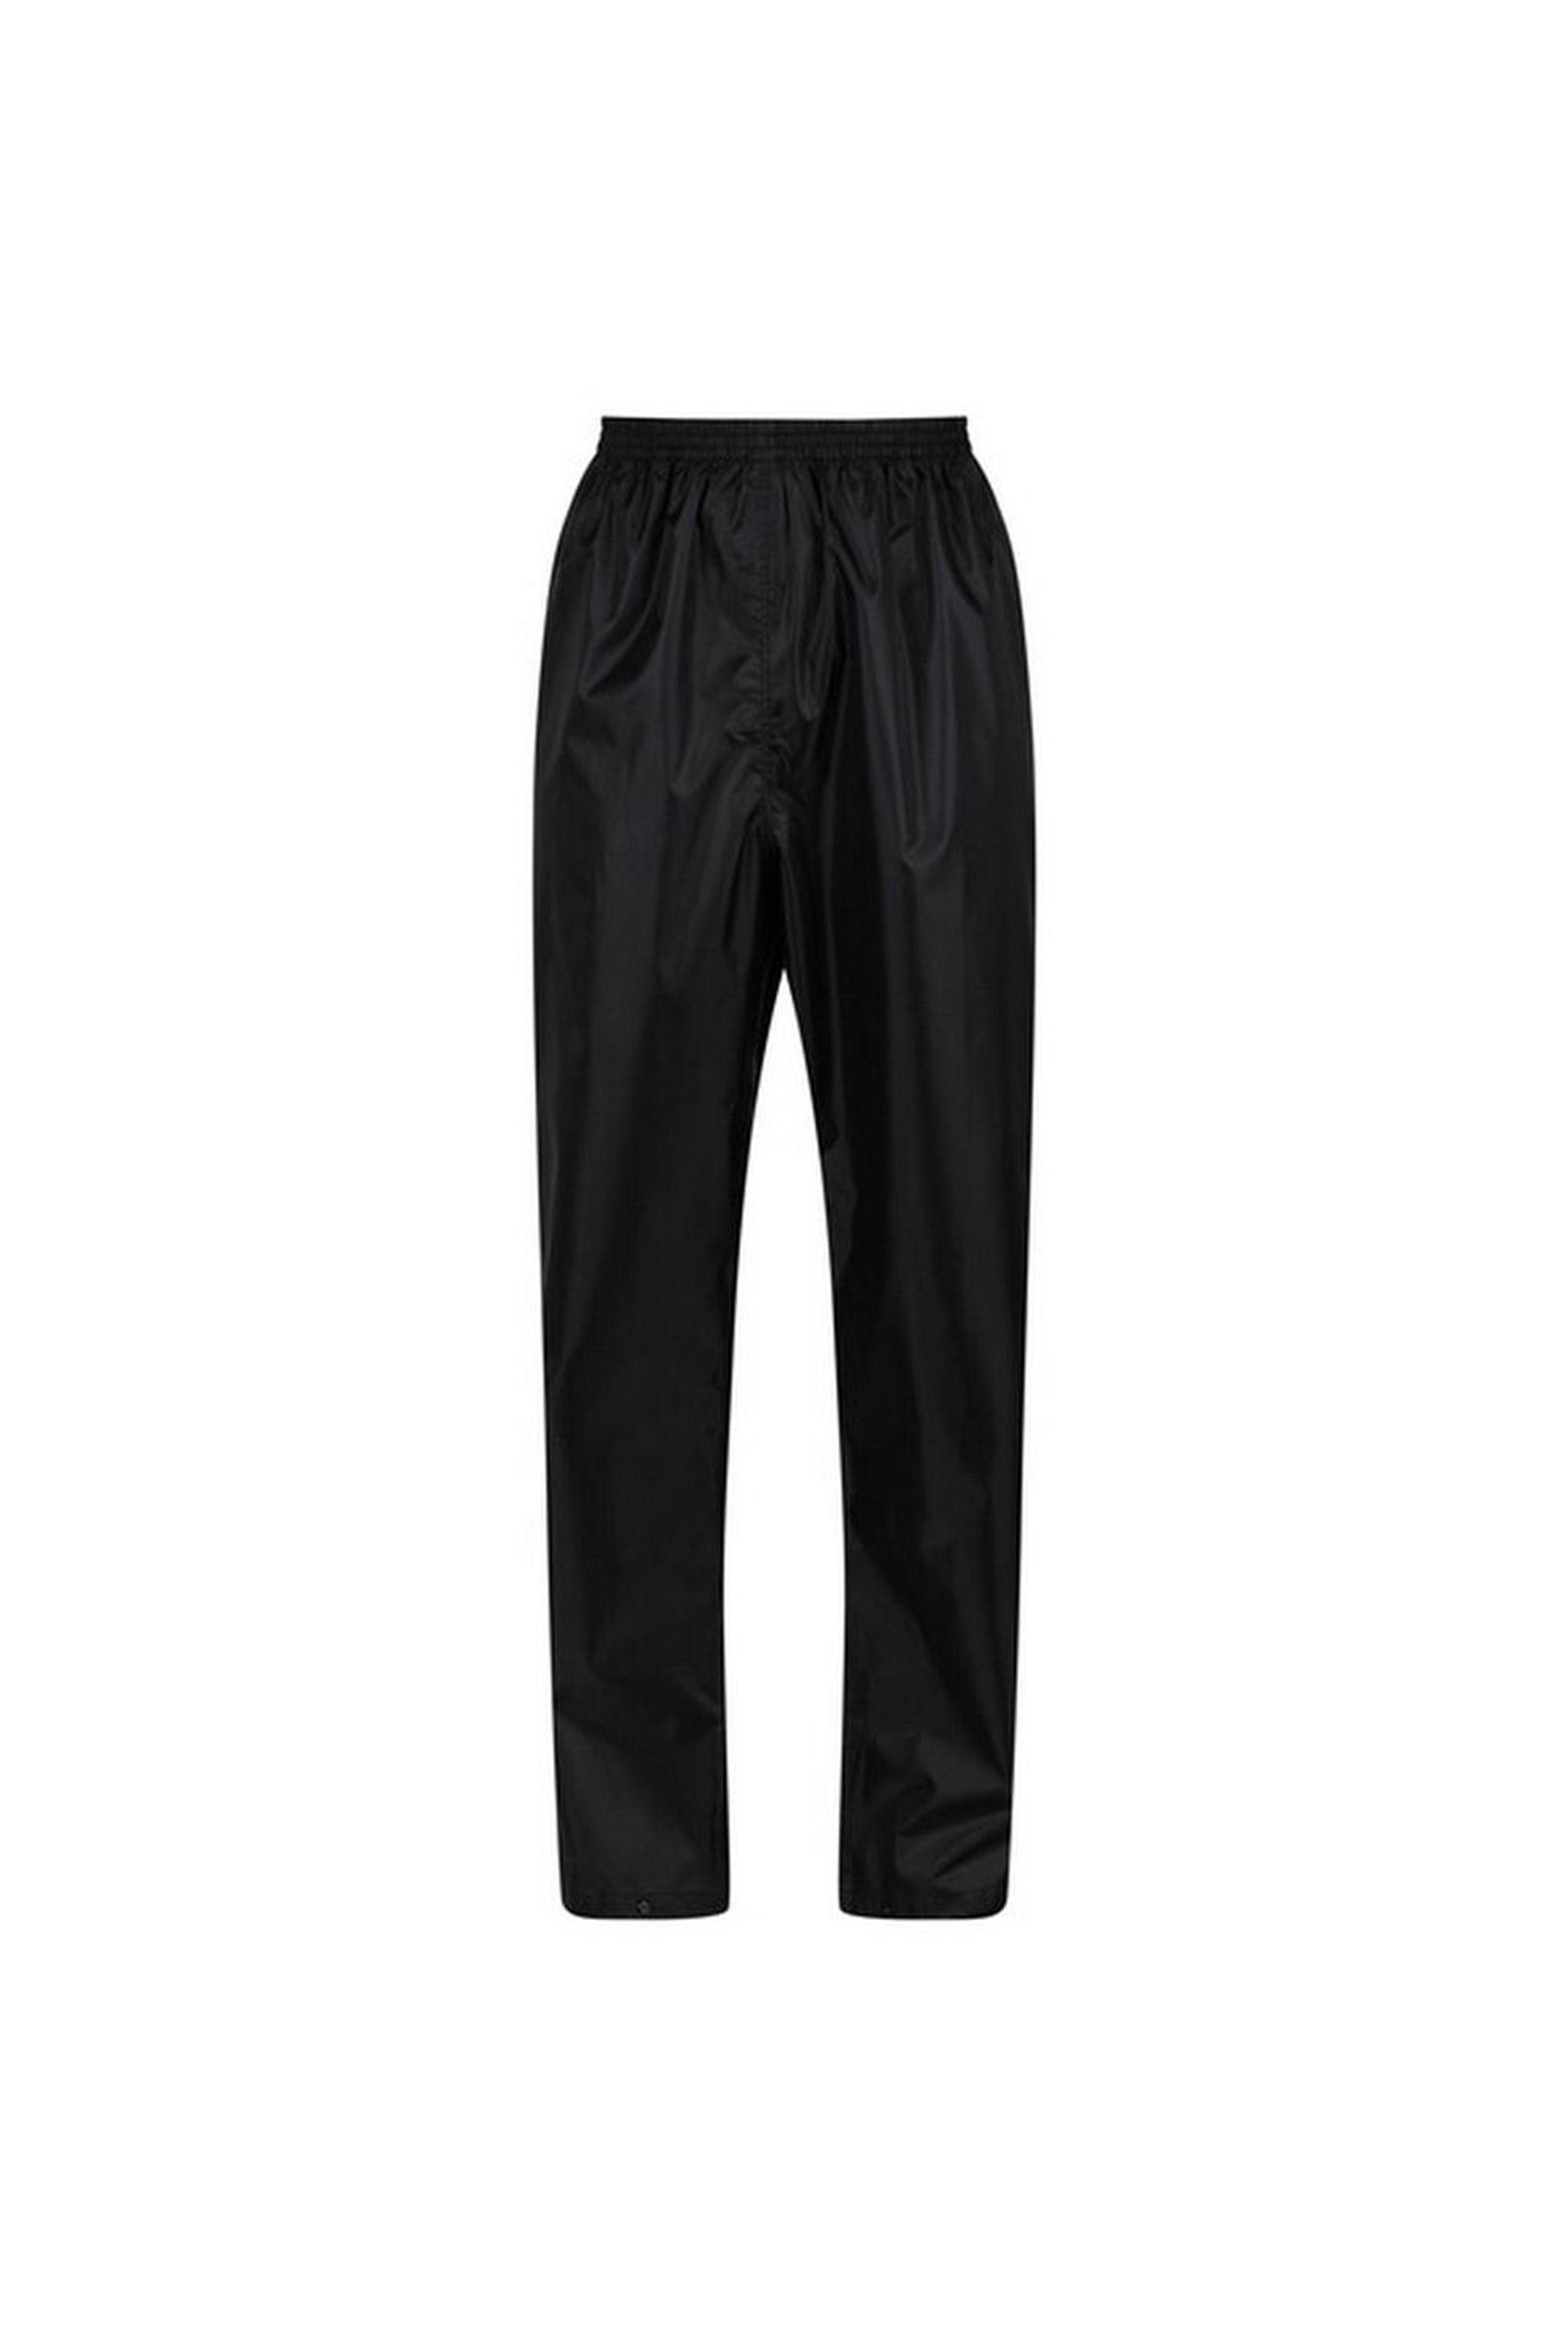 Regatta Adult Packaway Waterproof Jacket And Trousers Set in Black | Lyst